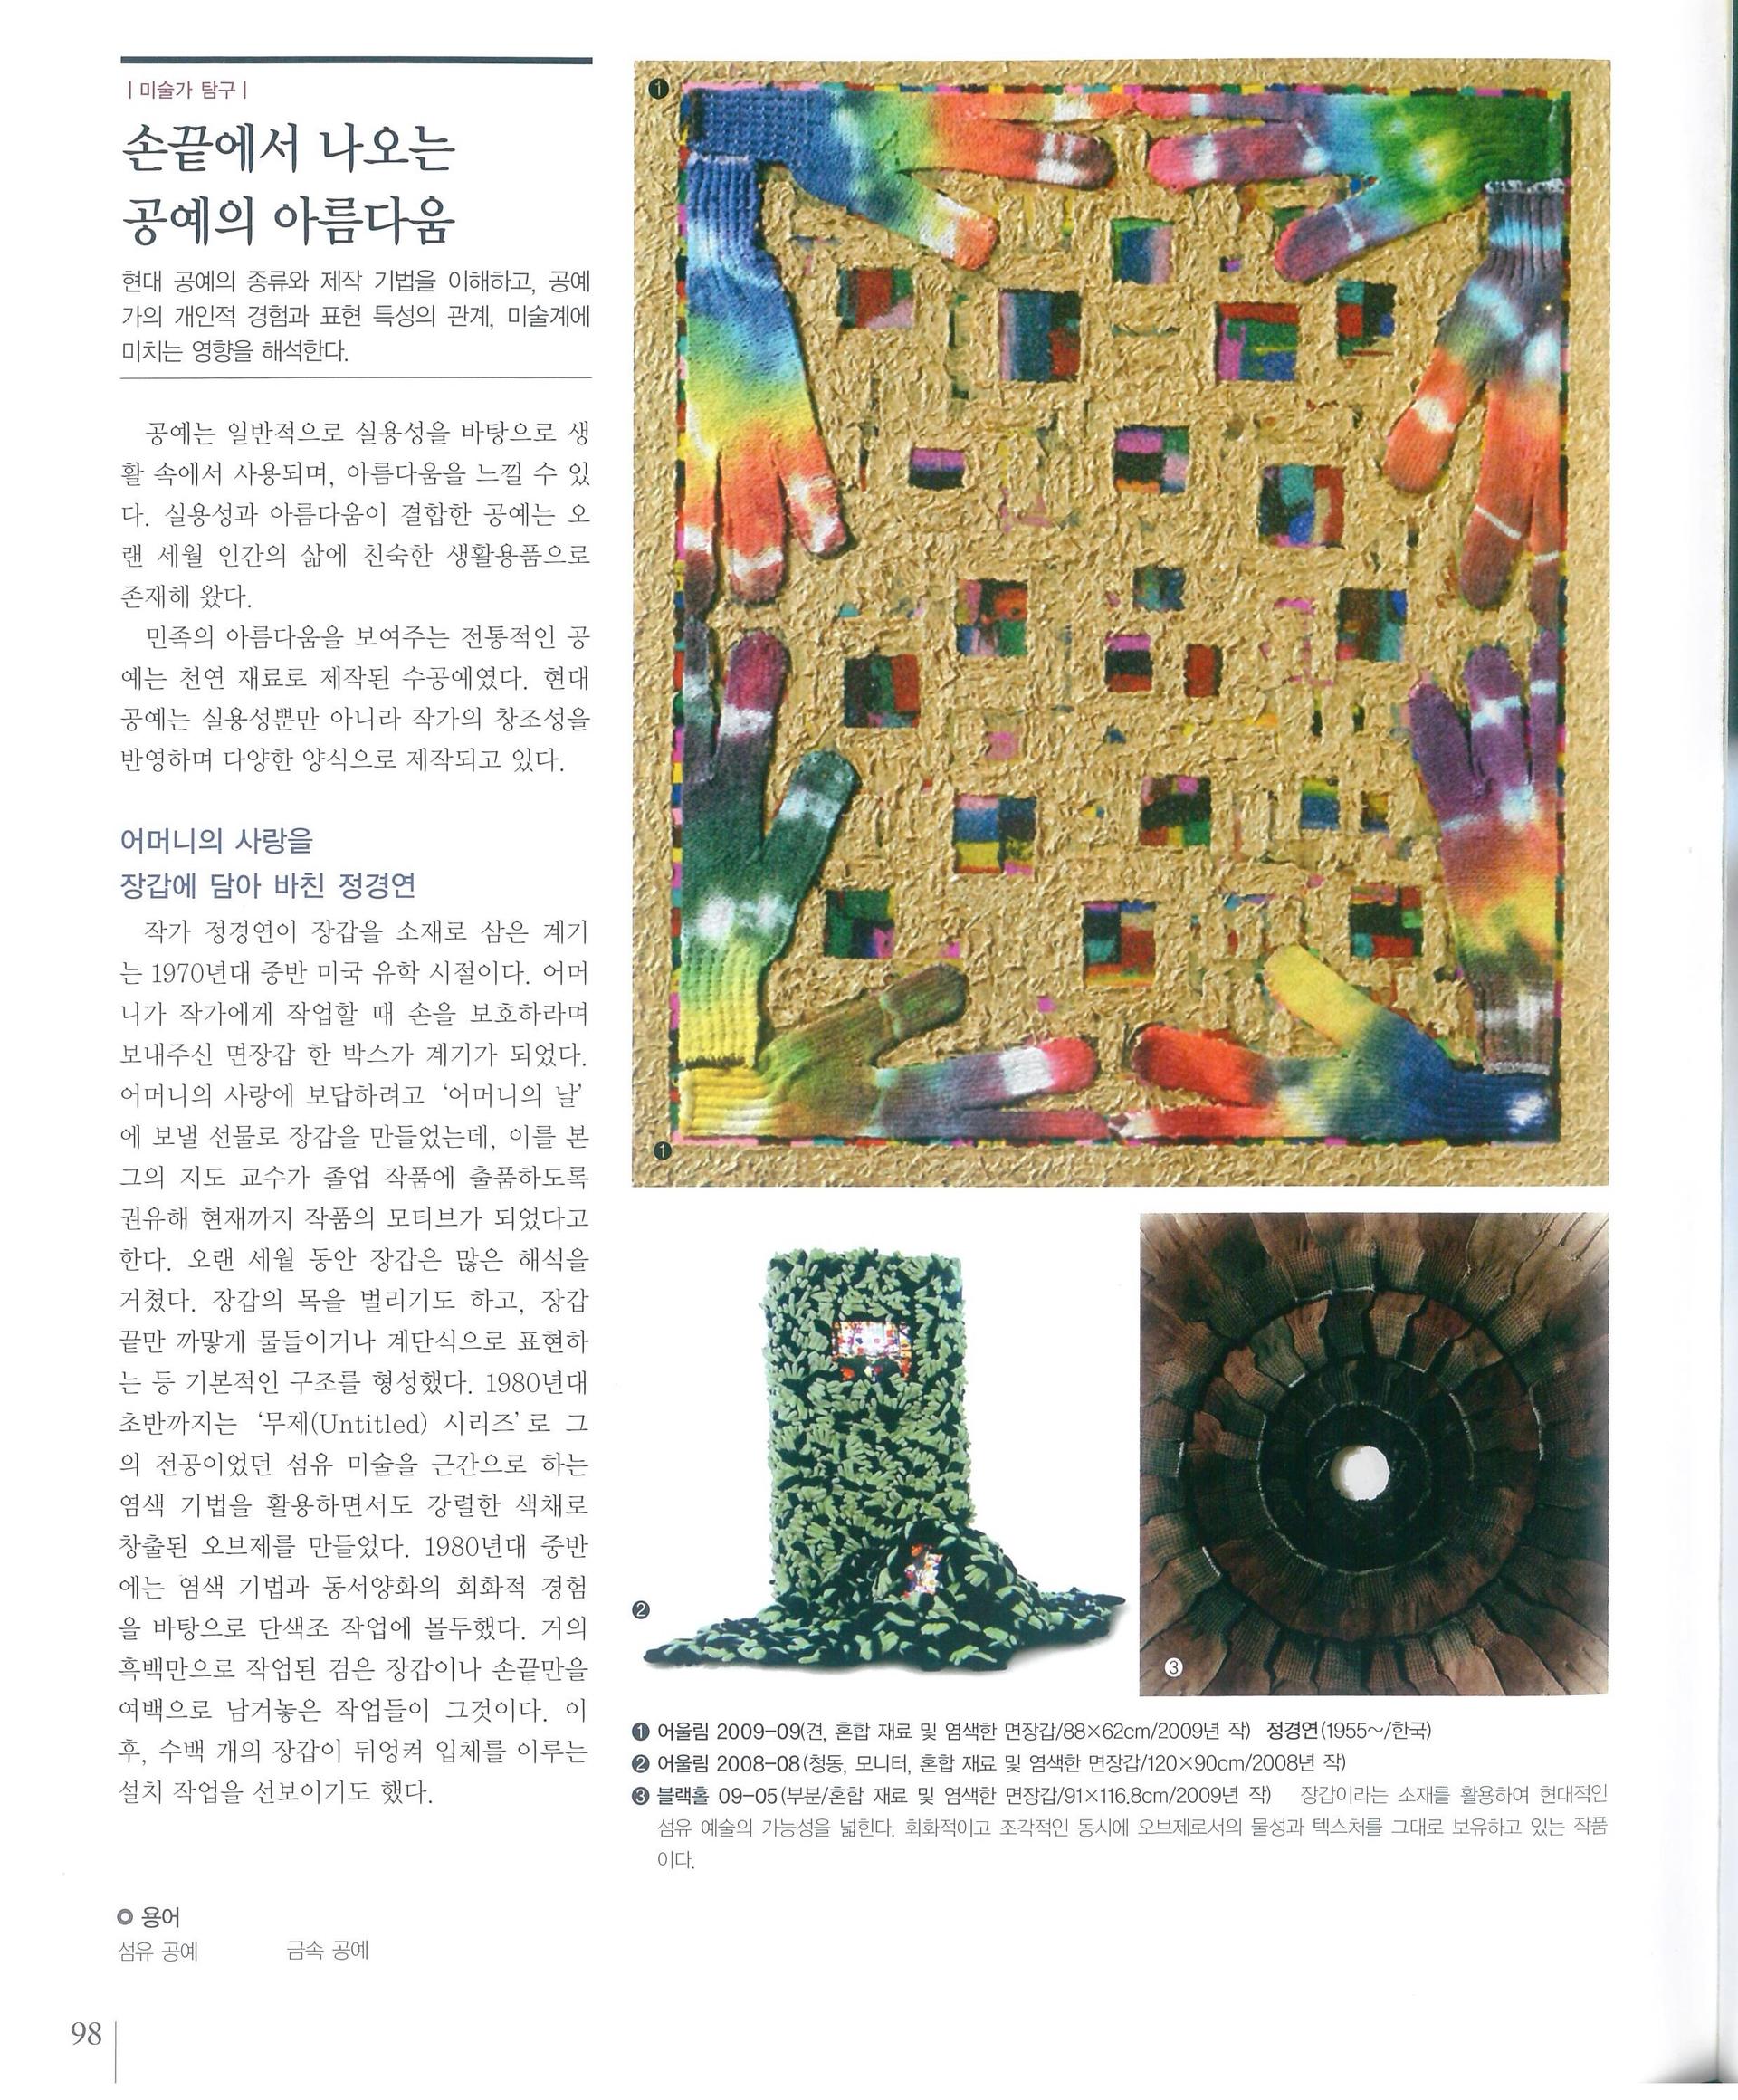 교과서_고등학교 미술감상,(주)교학사,2011년,98P : Newspaper